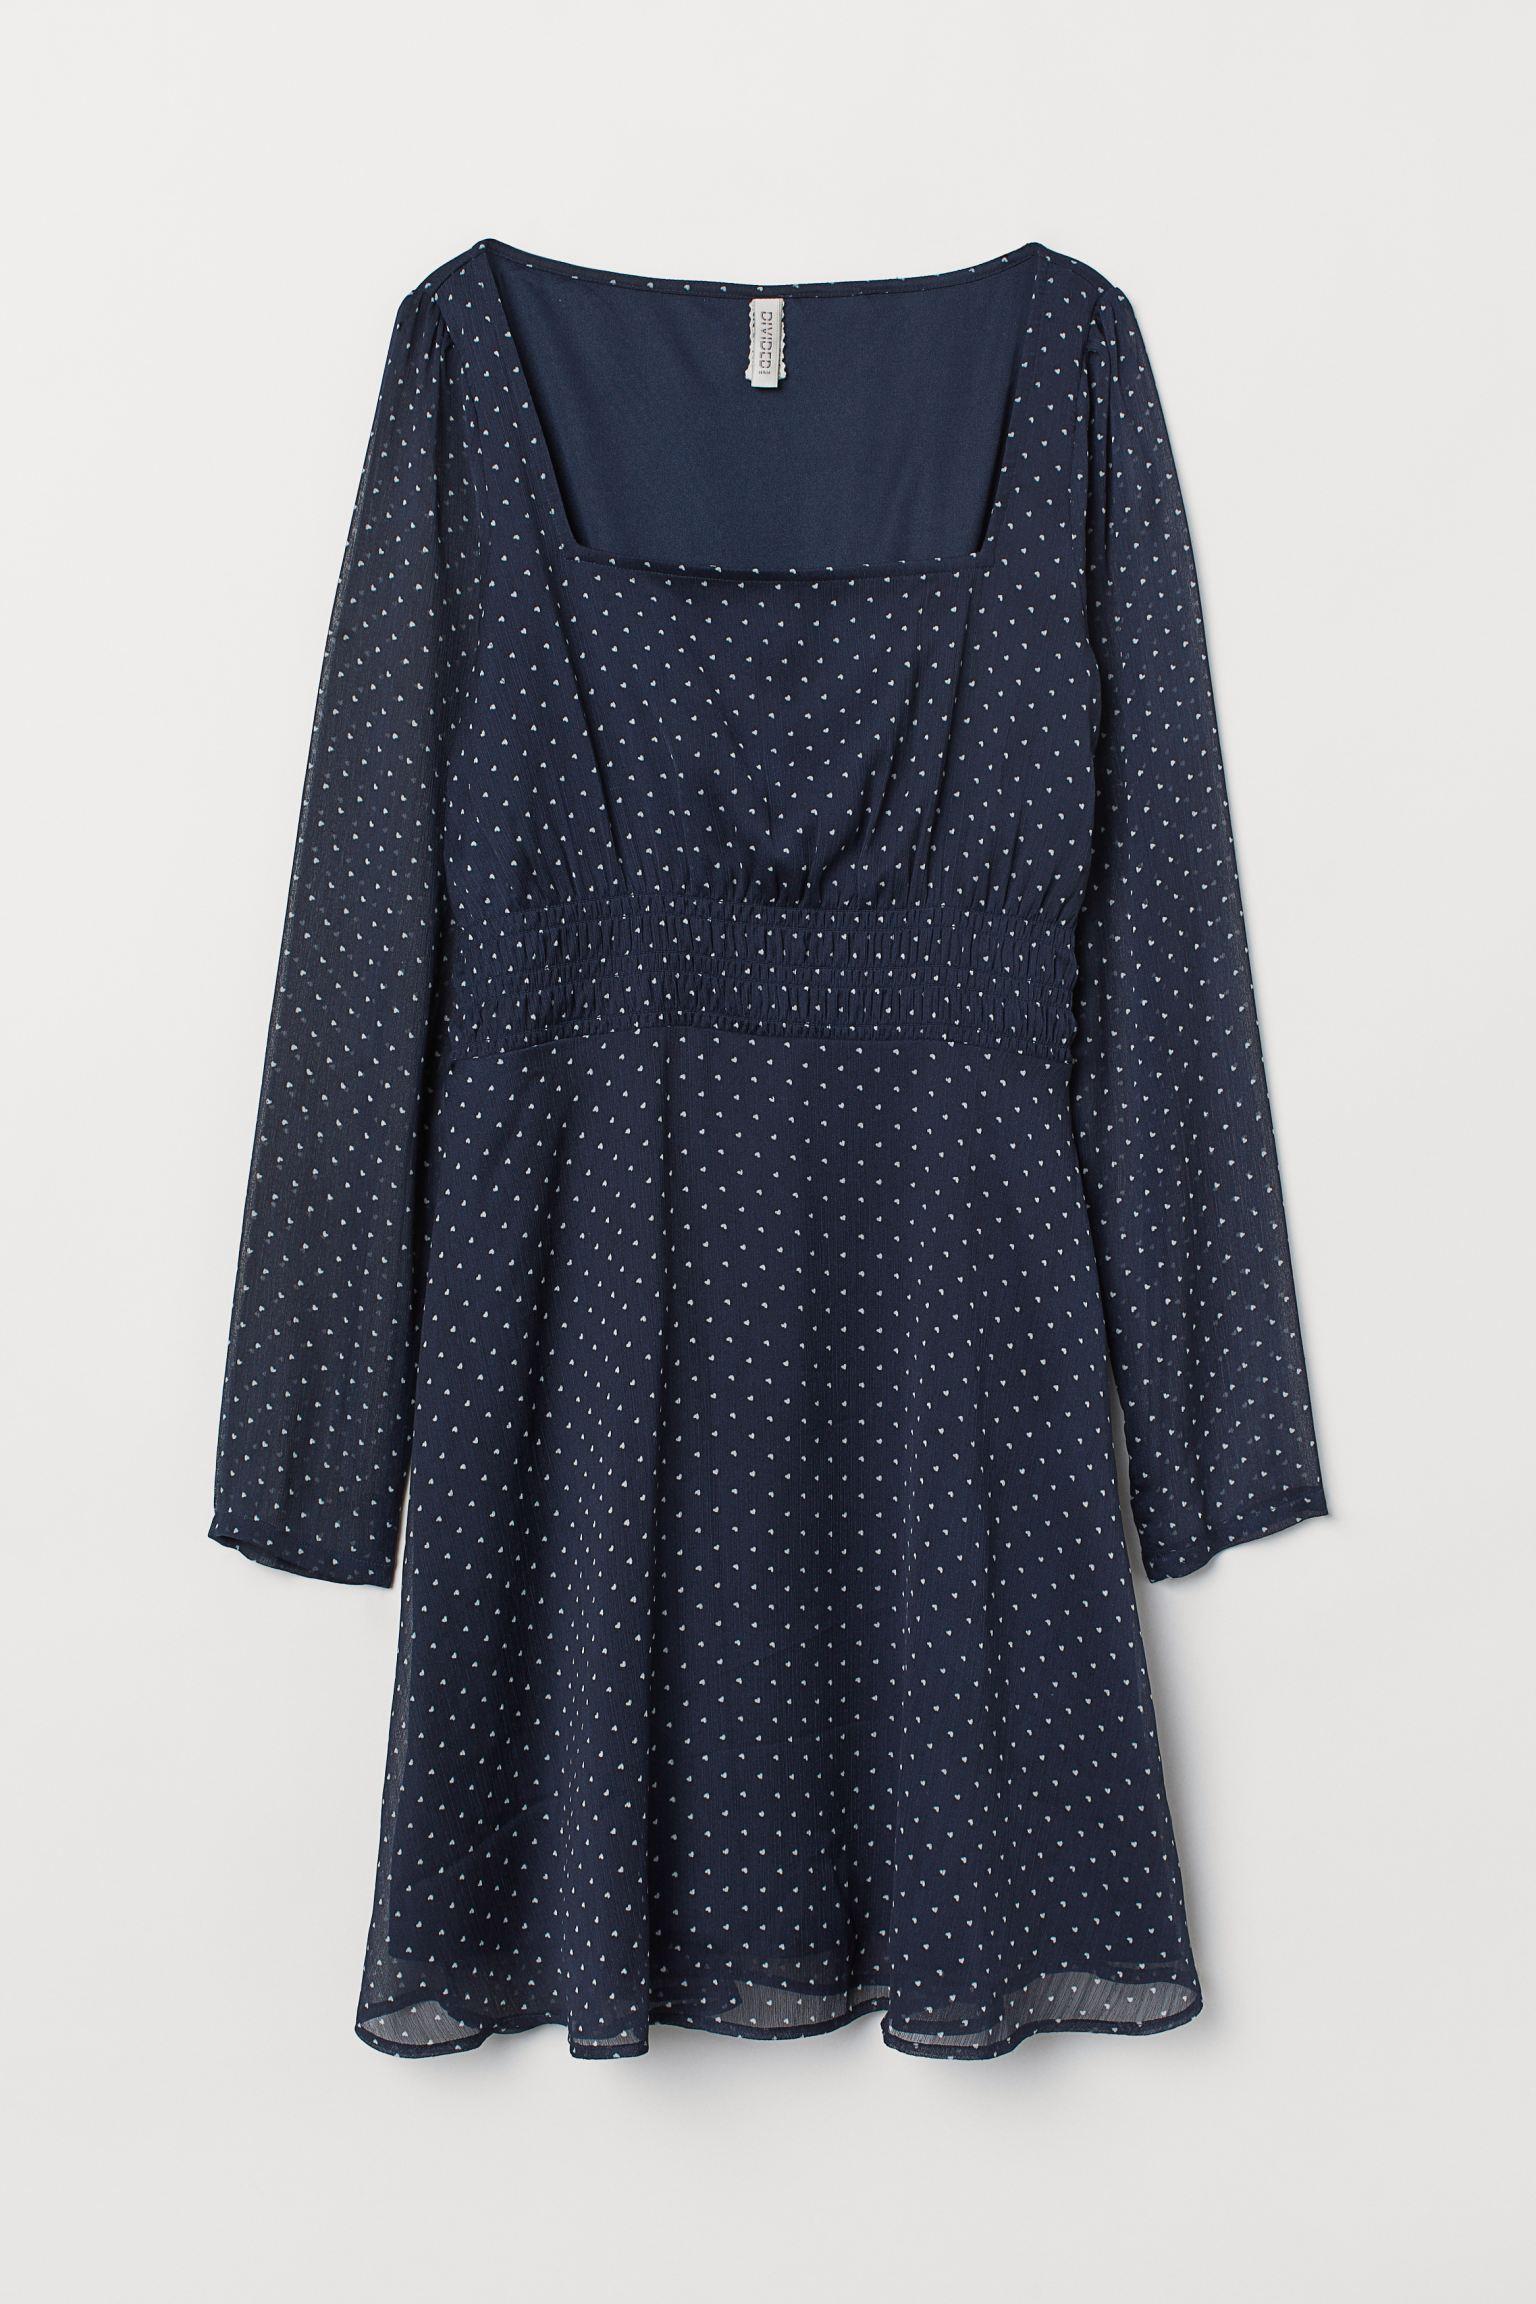 Отзыв на Платье с рисунком из Интернет-Магазина H&M